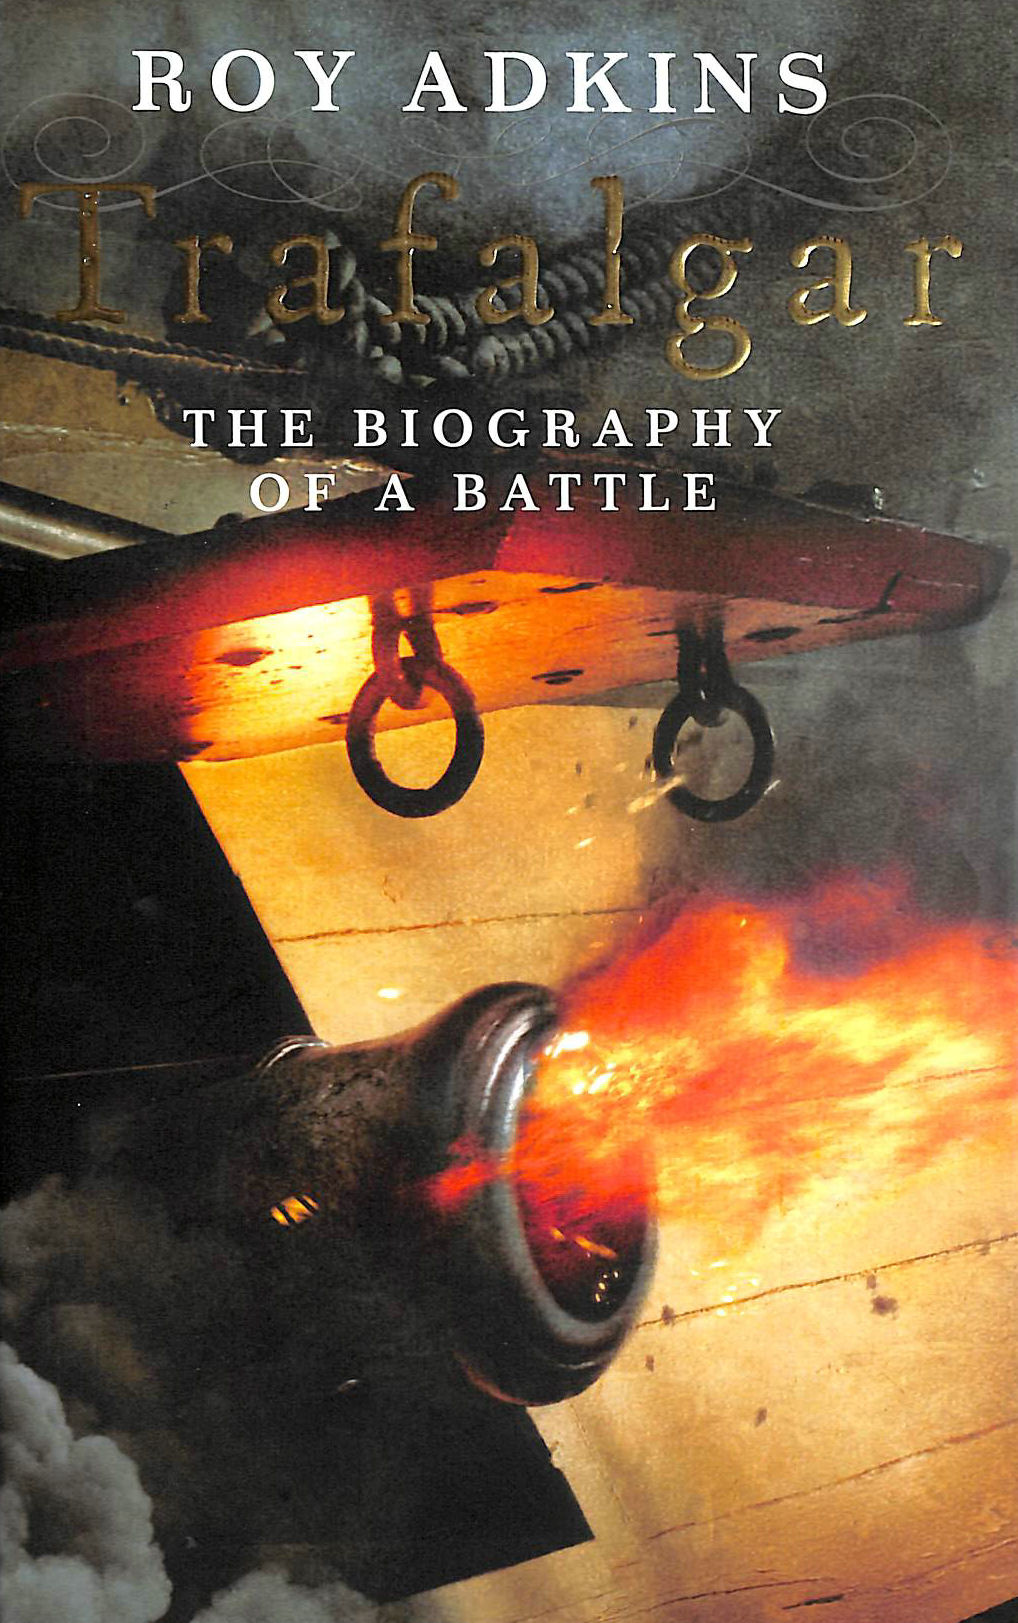 ADKINS, ROY - Trafalgar: The Biography of a Battle